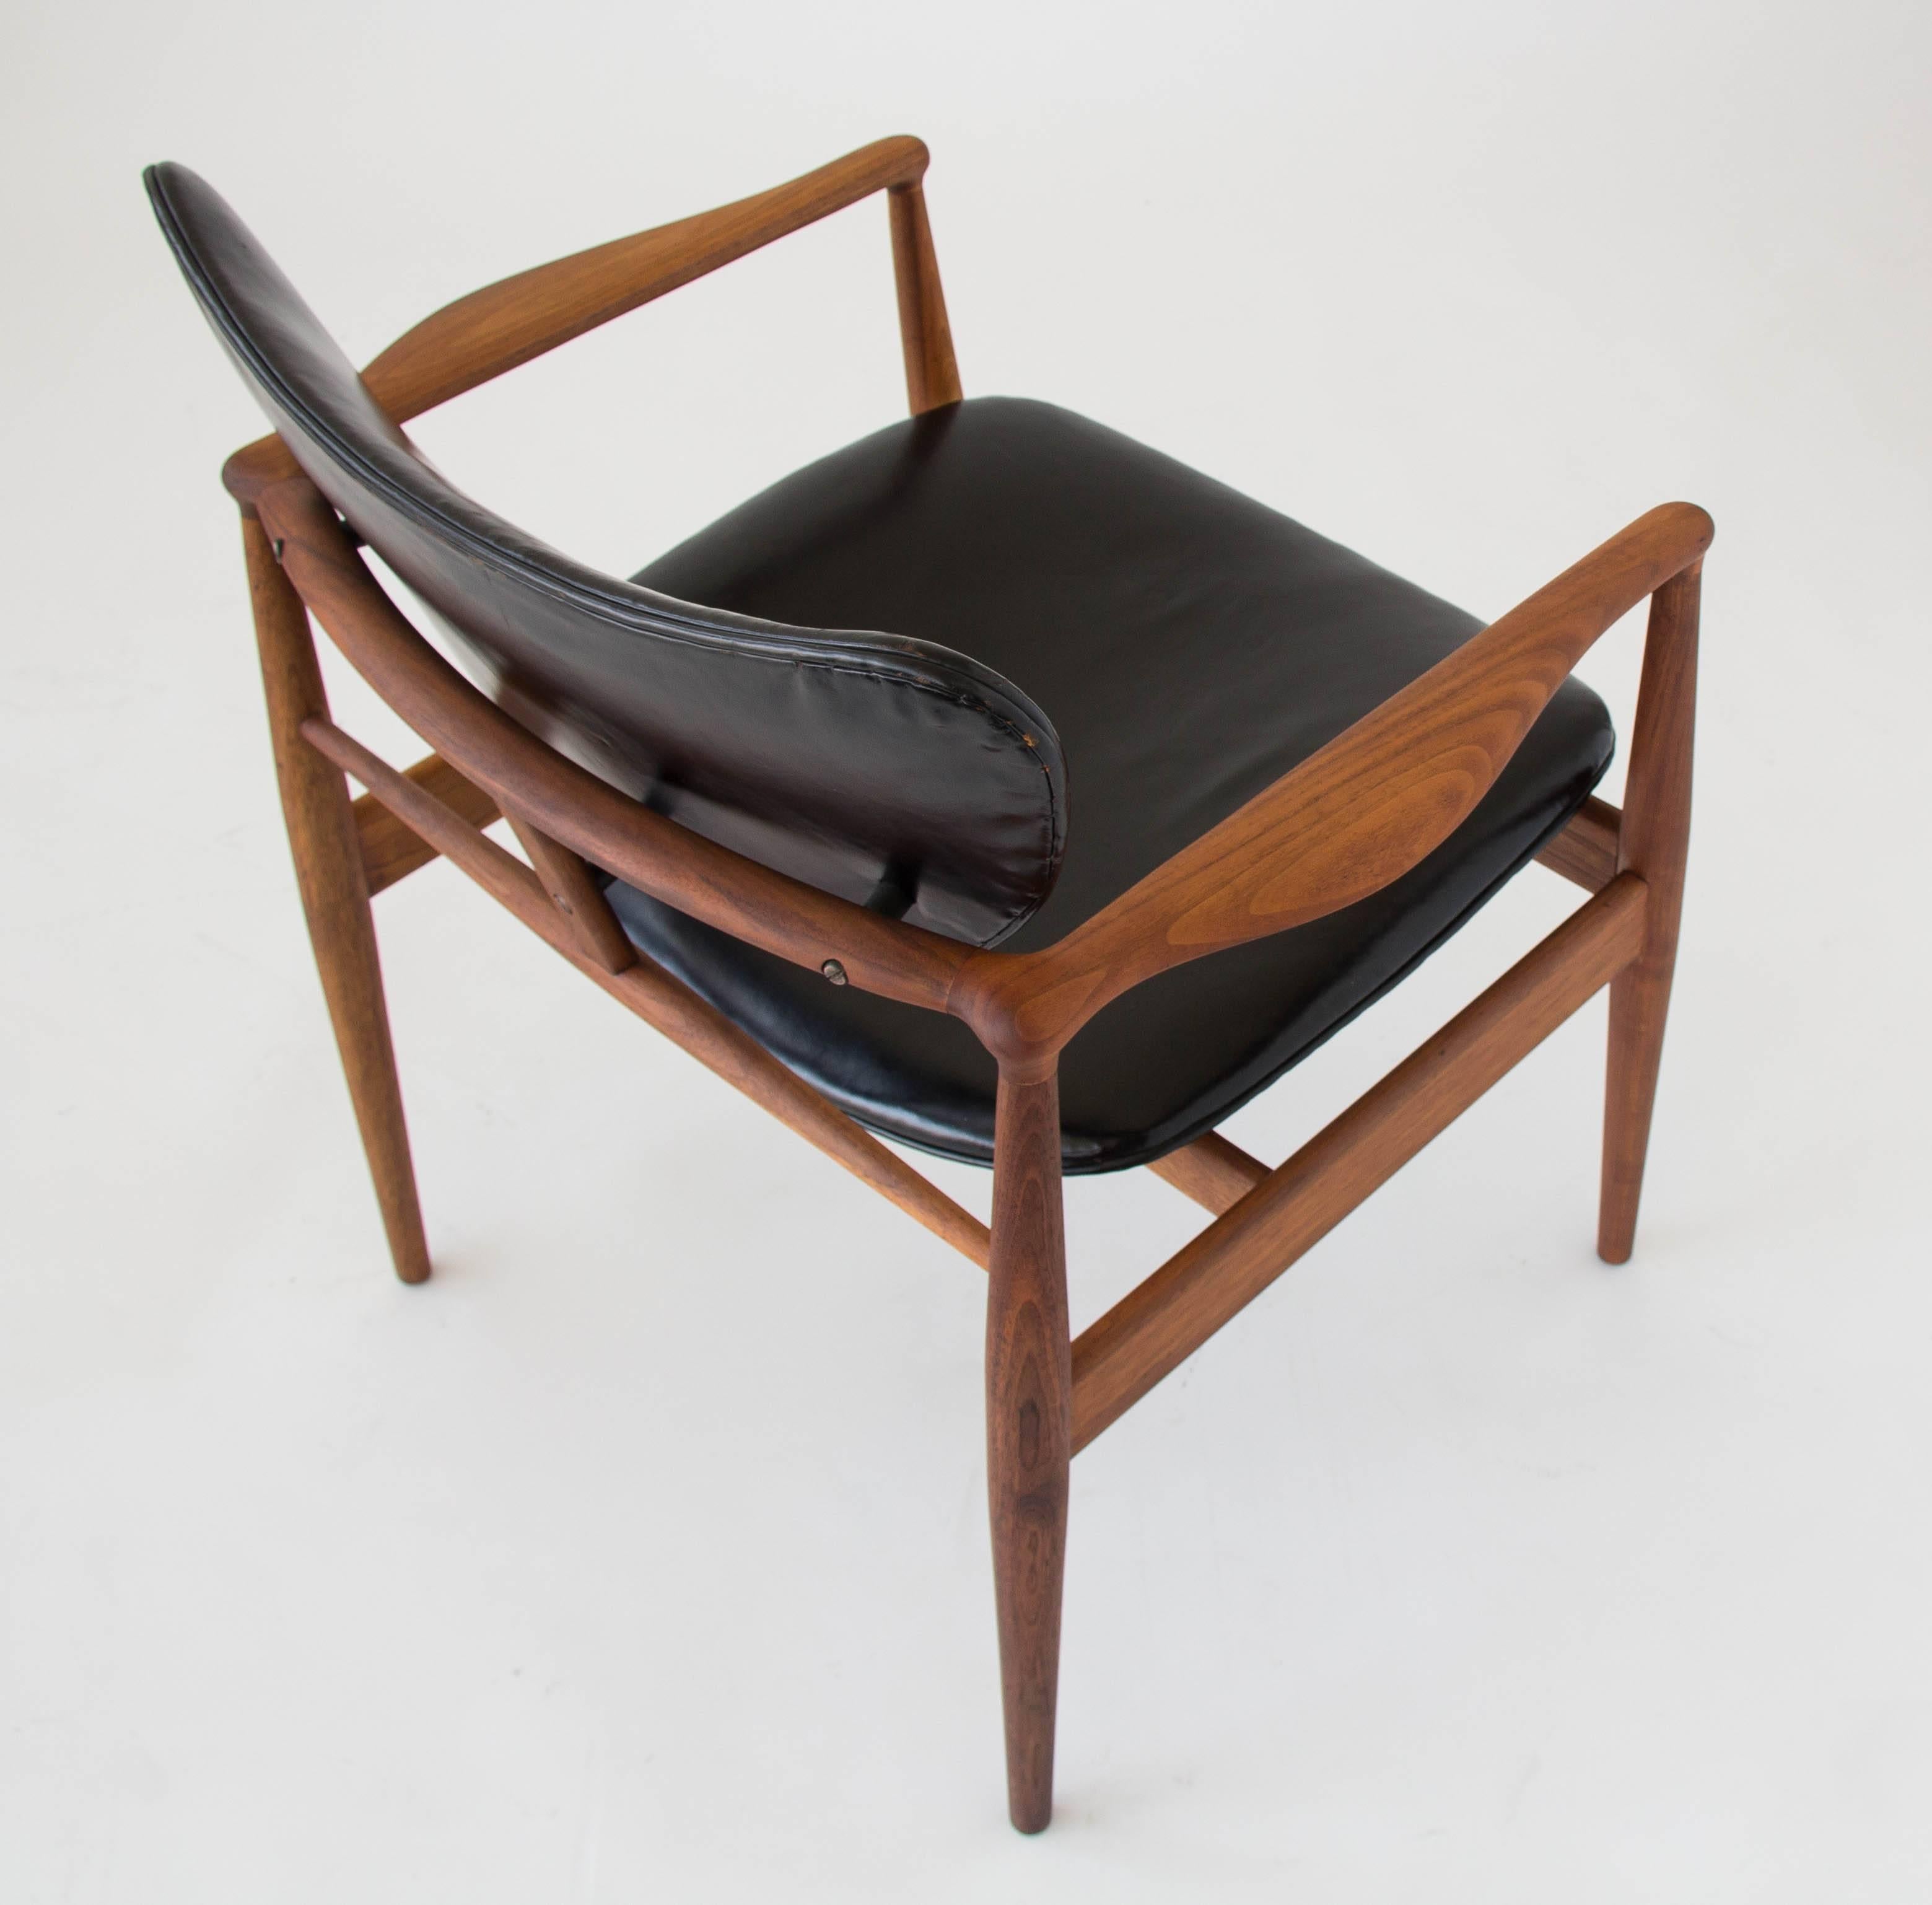 Patinated Finn Juhl Model 48 Chair for Baker Furniture